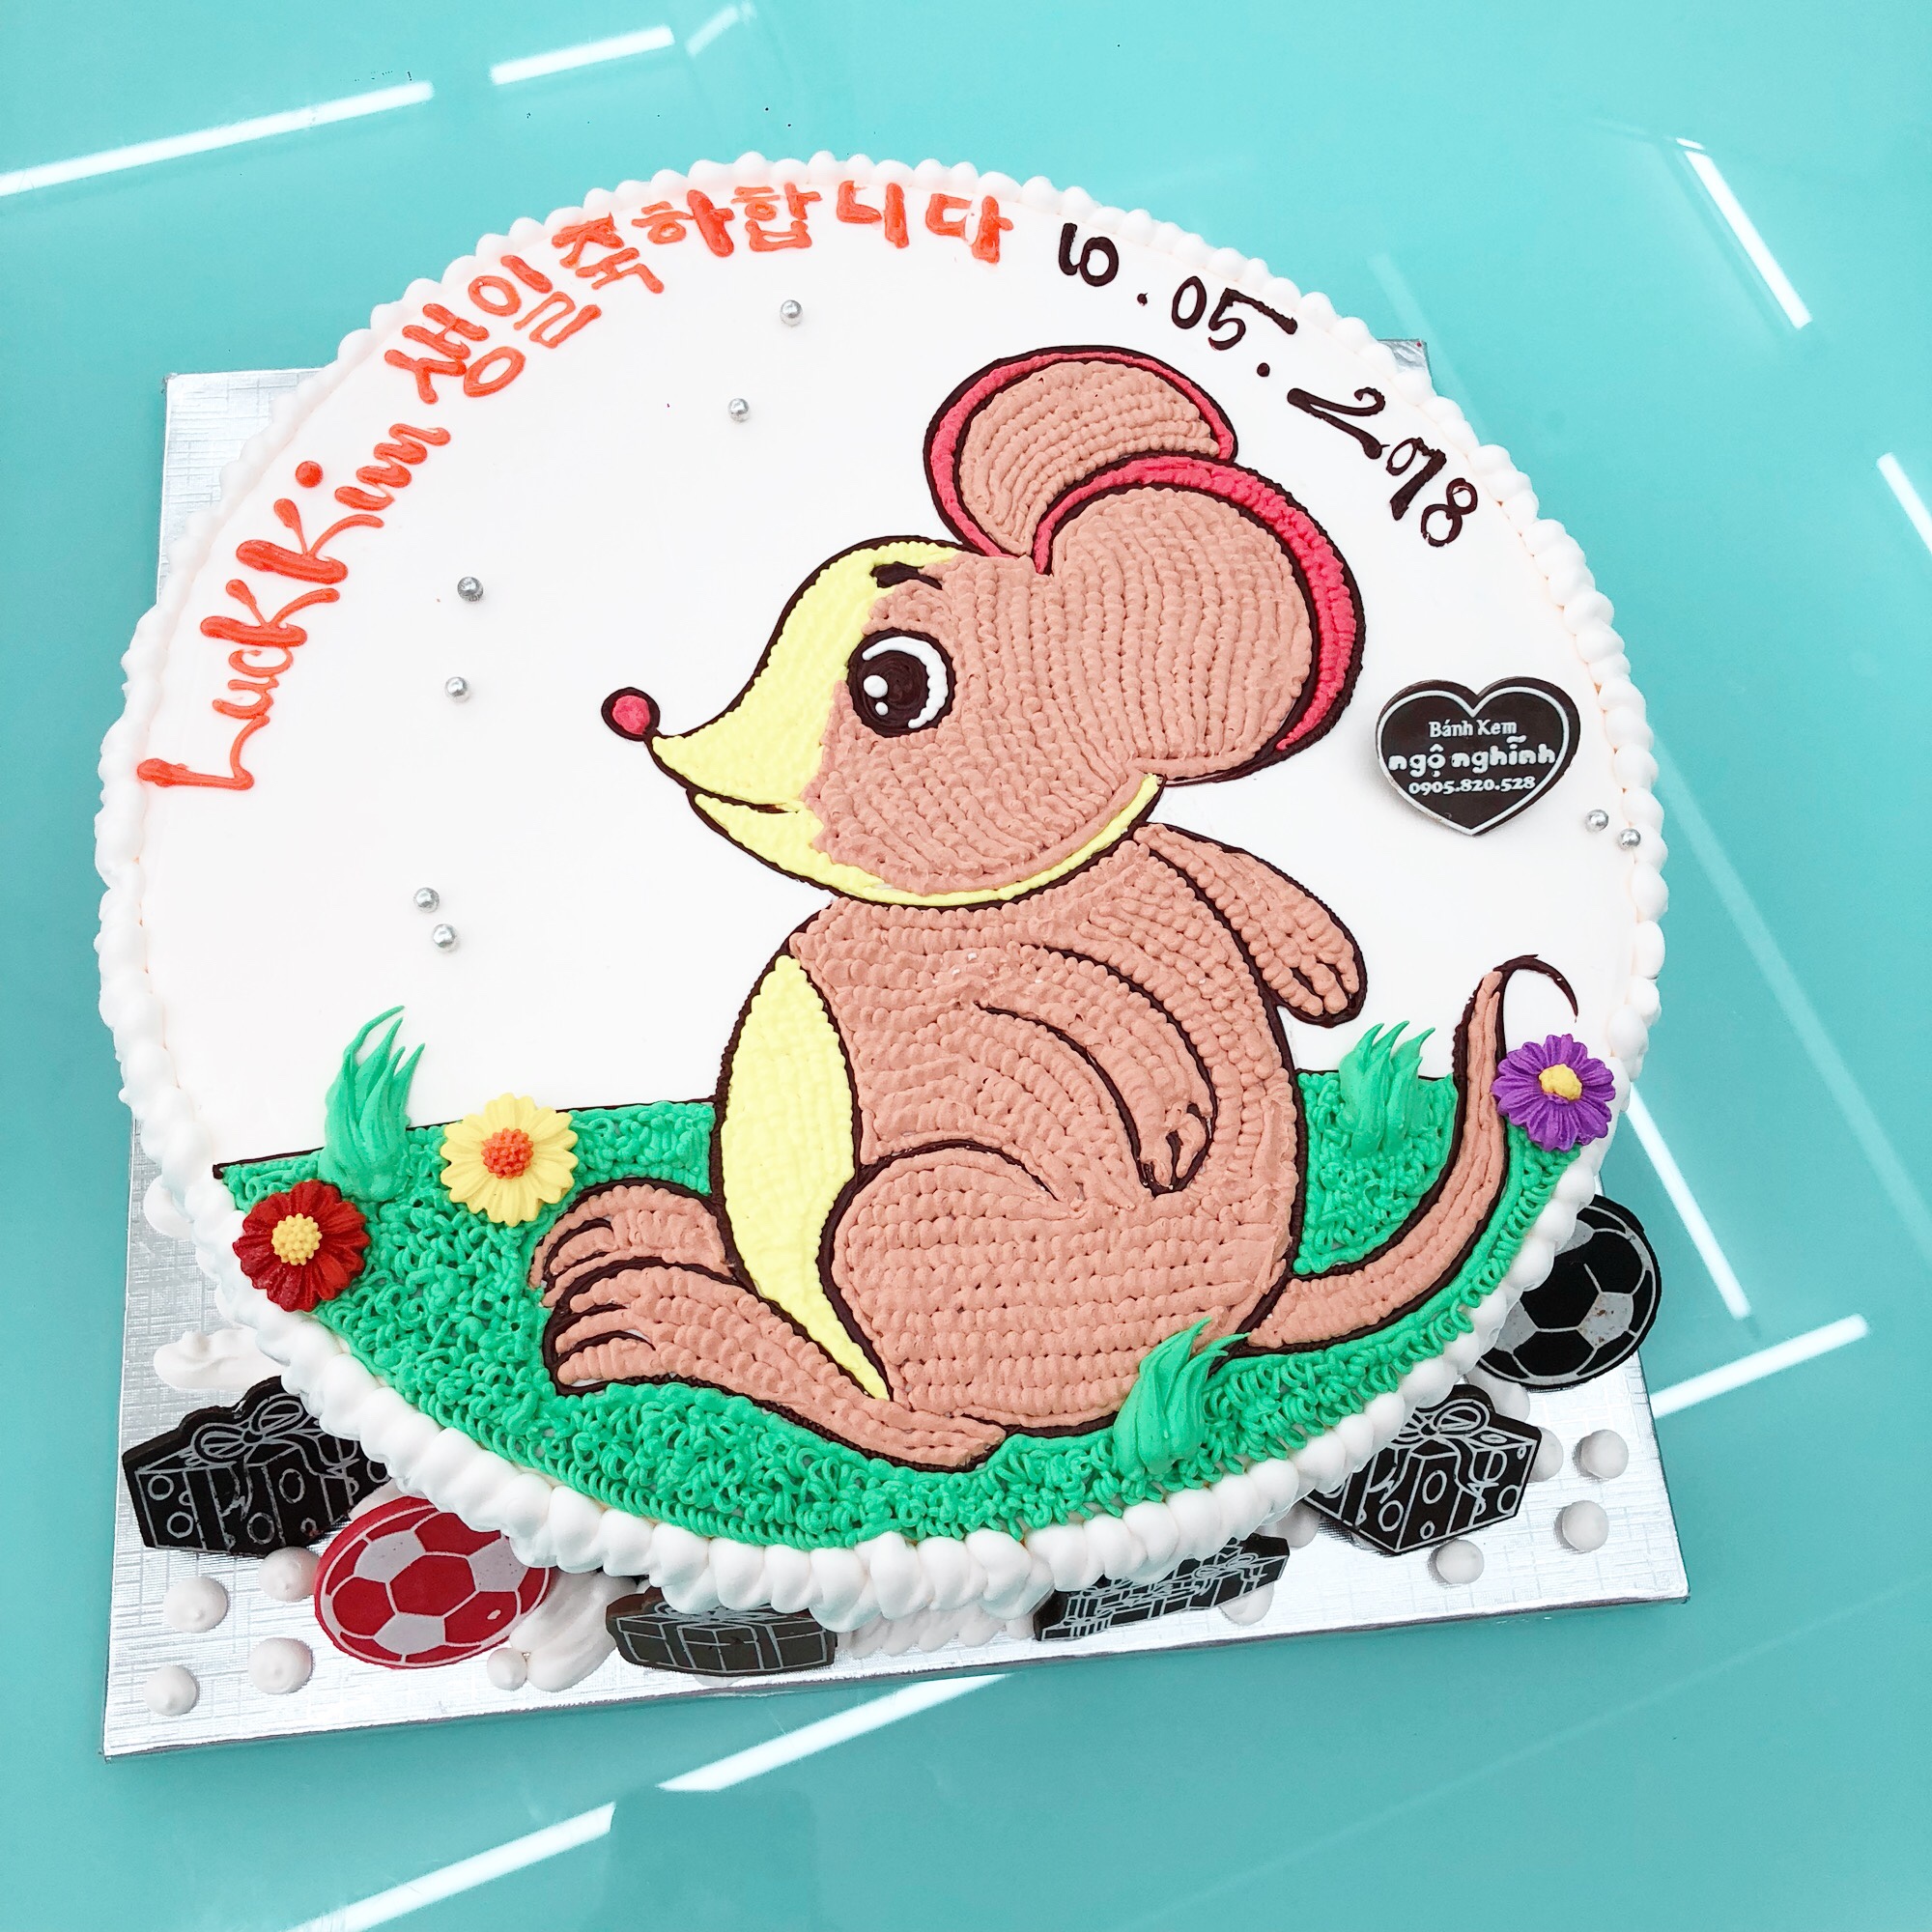 Hôm nay chúng ta sẽ thưởng thức một chiếc bánh sinh nhật đặc biệt với hình vẽ con chuột đáng yêu. Chắc chắn bạn sẽ bất ngờ về sự tài năng của người nặn bánh này!